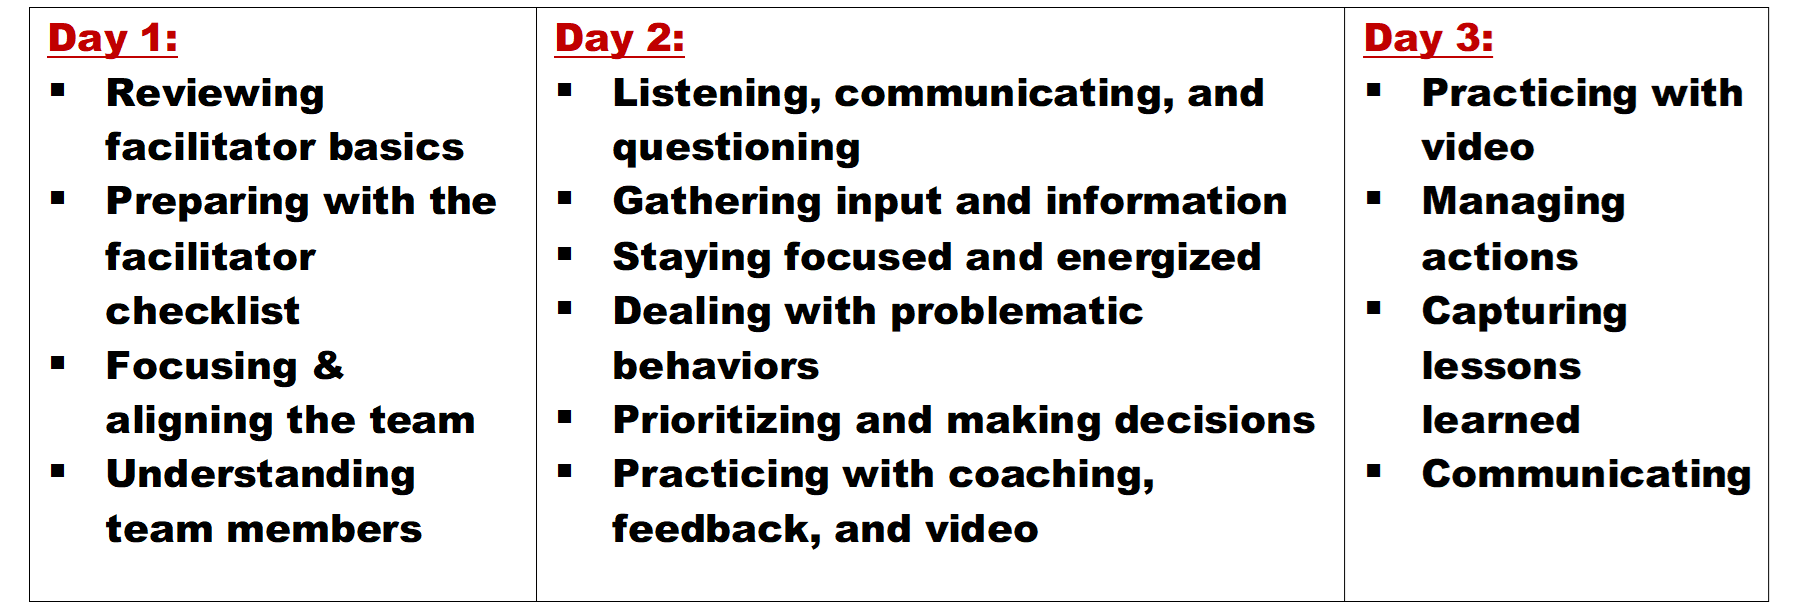 advanced facilitation training agenda